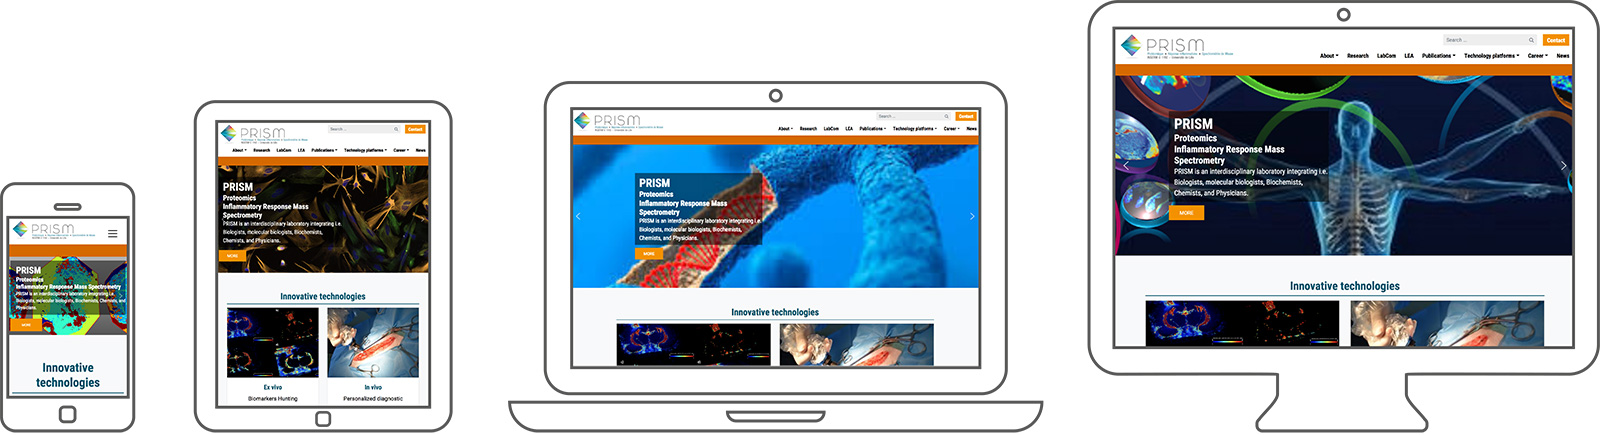 Refonte web du site internet CMS par Staminic, l'agence de communication et marketing basée à Lille